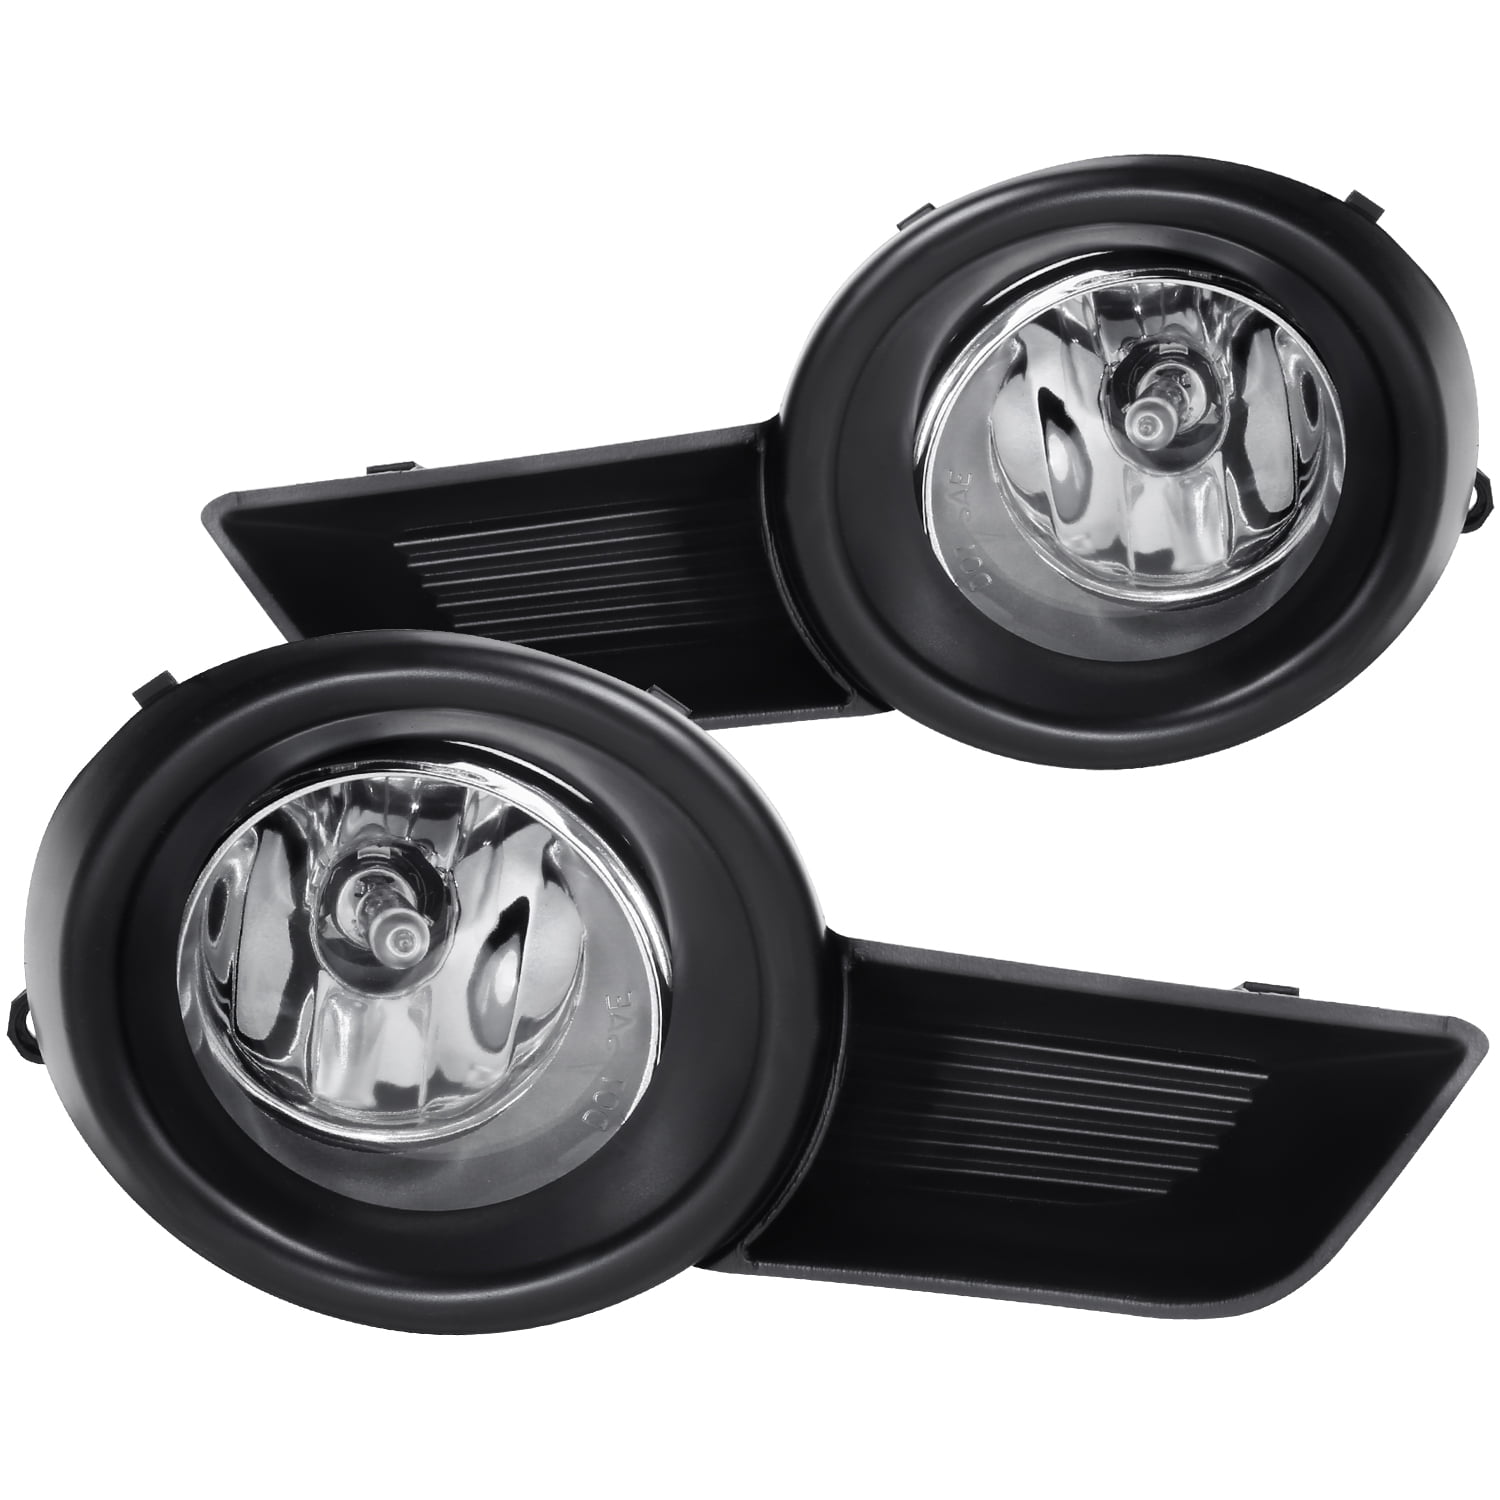 Clear Lens Black Housing Fog Light Lamps Kit Fits 2008-2011 Toyota Highlander 